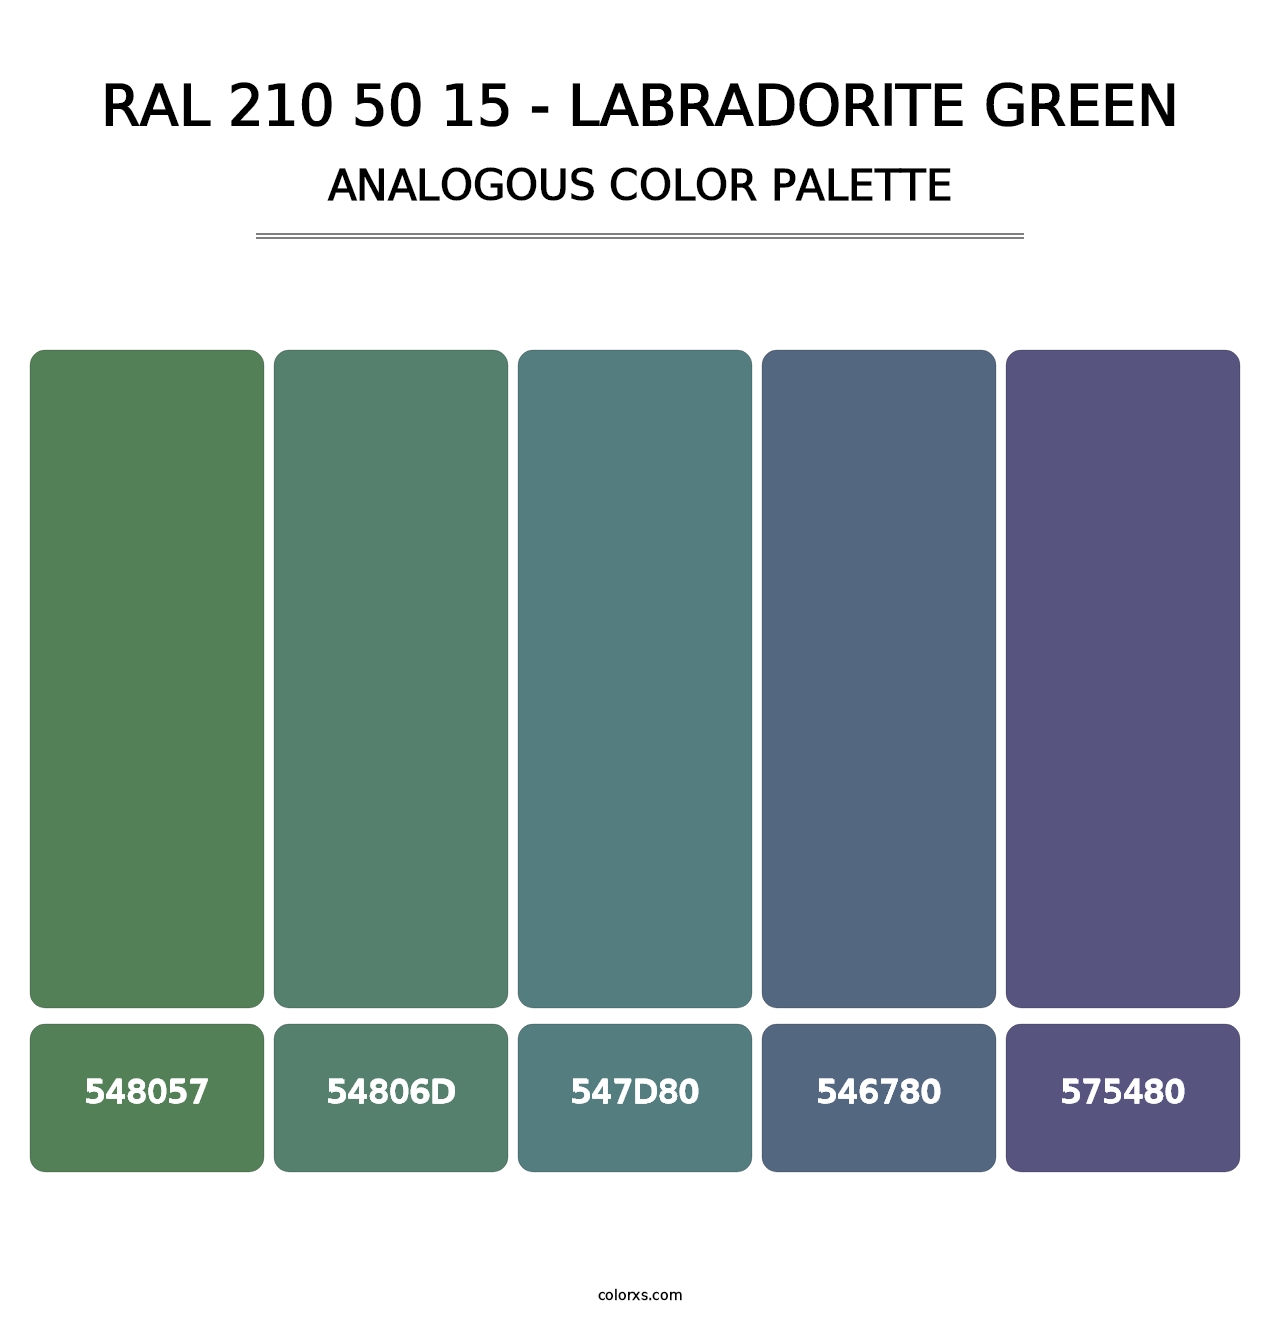 RAL 210 50 15 - Labradorite Green - Analogous Color Palette